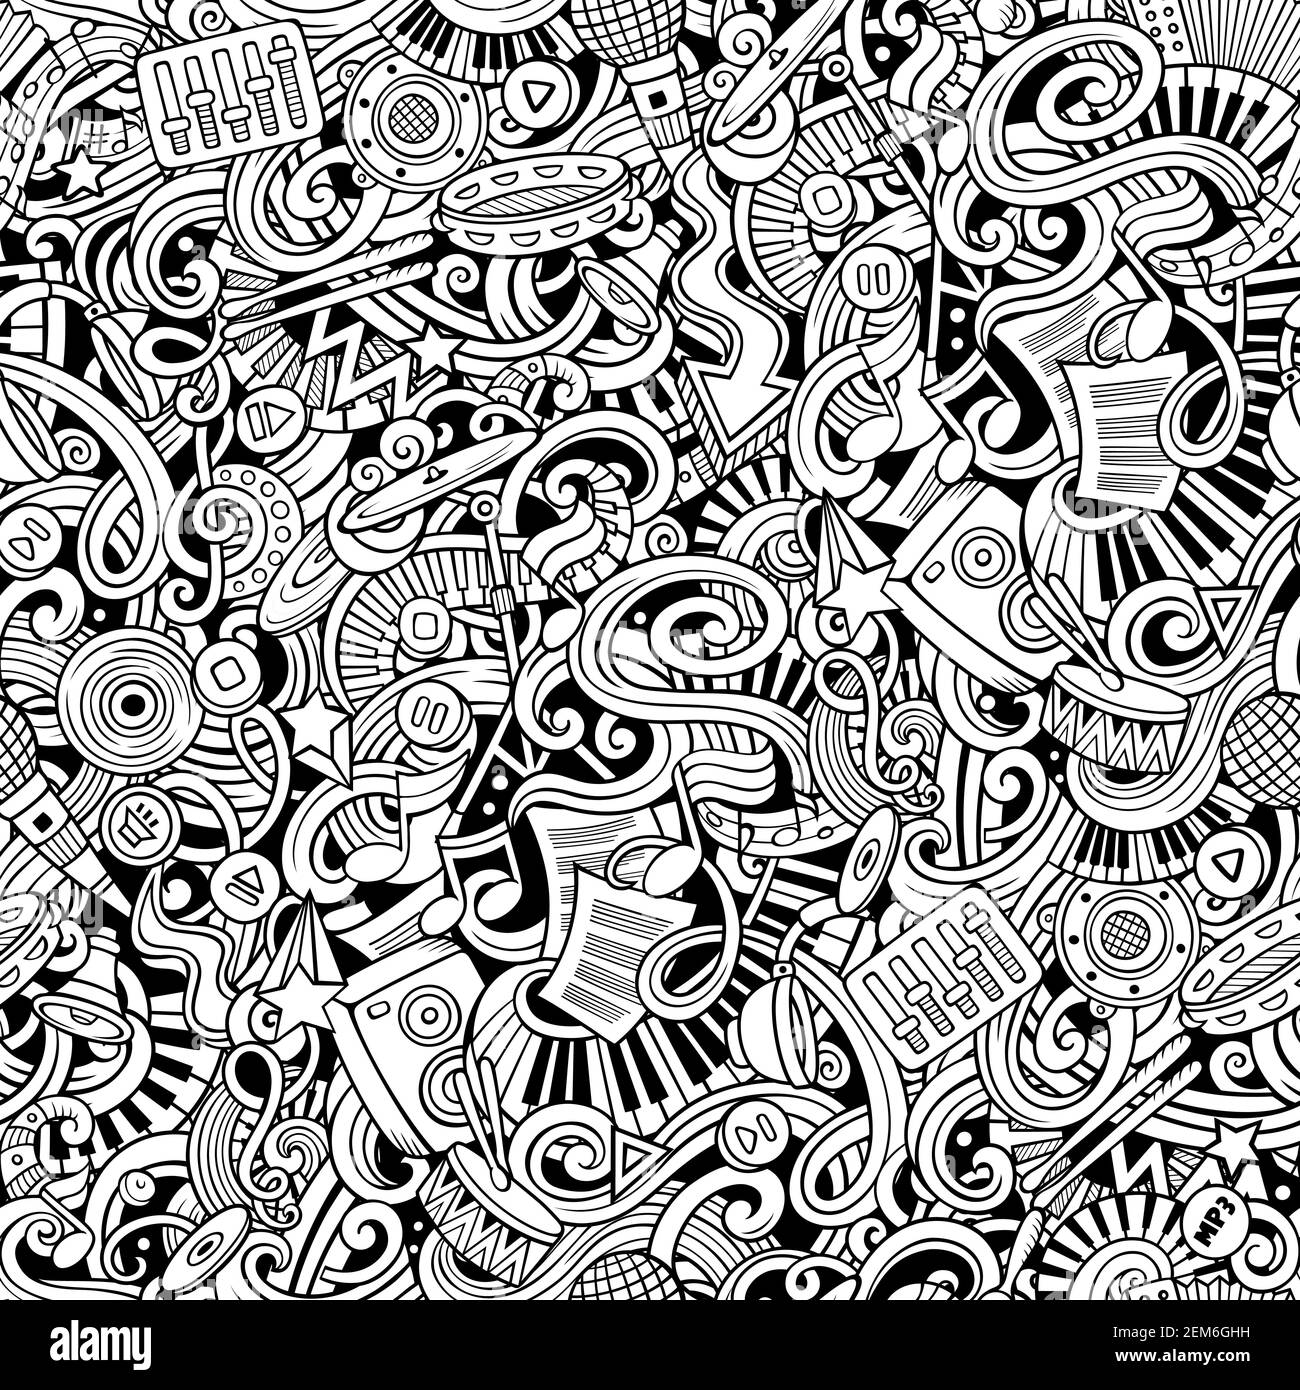 Musik von Hand gezeichnete Kritzeleien nahtloses Muster. Musikinstrumente Hintergrund. Im Cartoon-Stoffdruck. Strichgrafiken Vektorgrafiken Stock Vektor